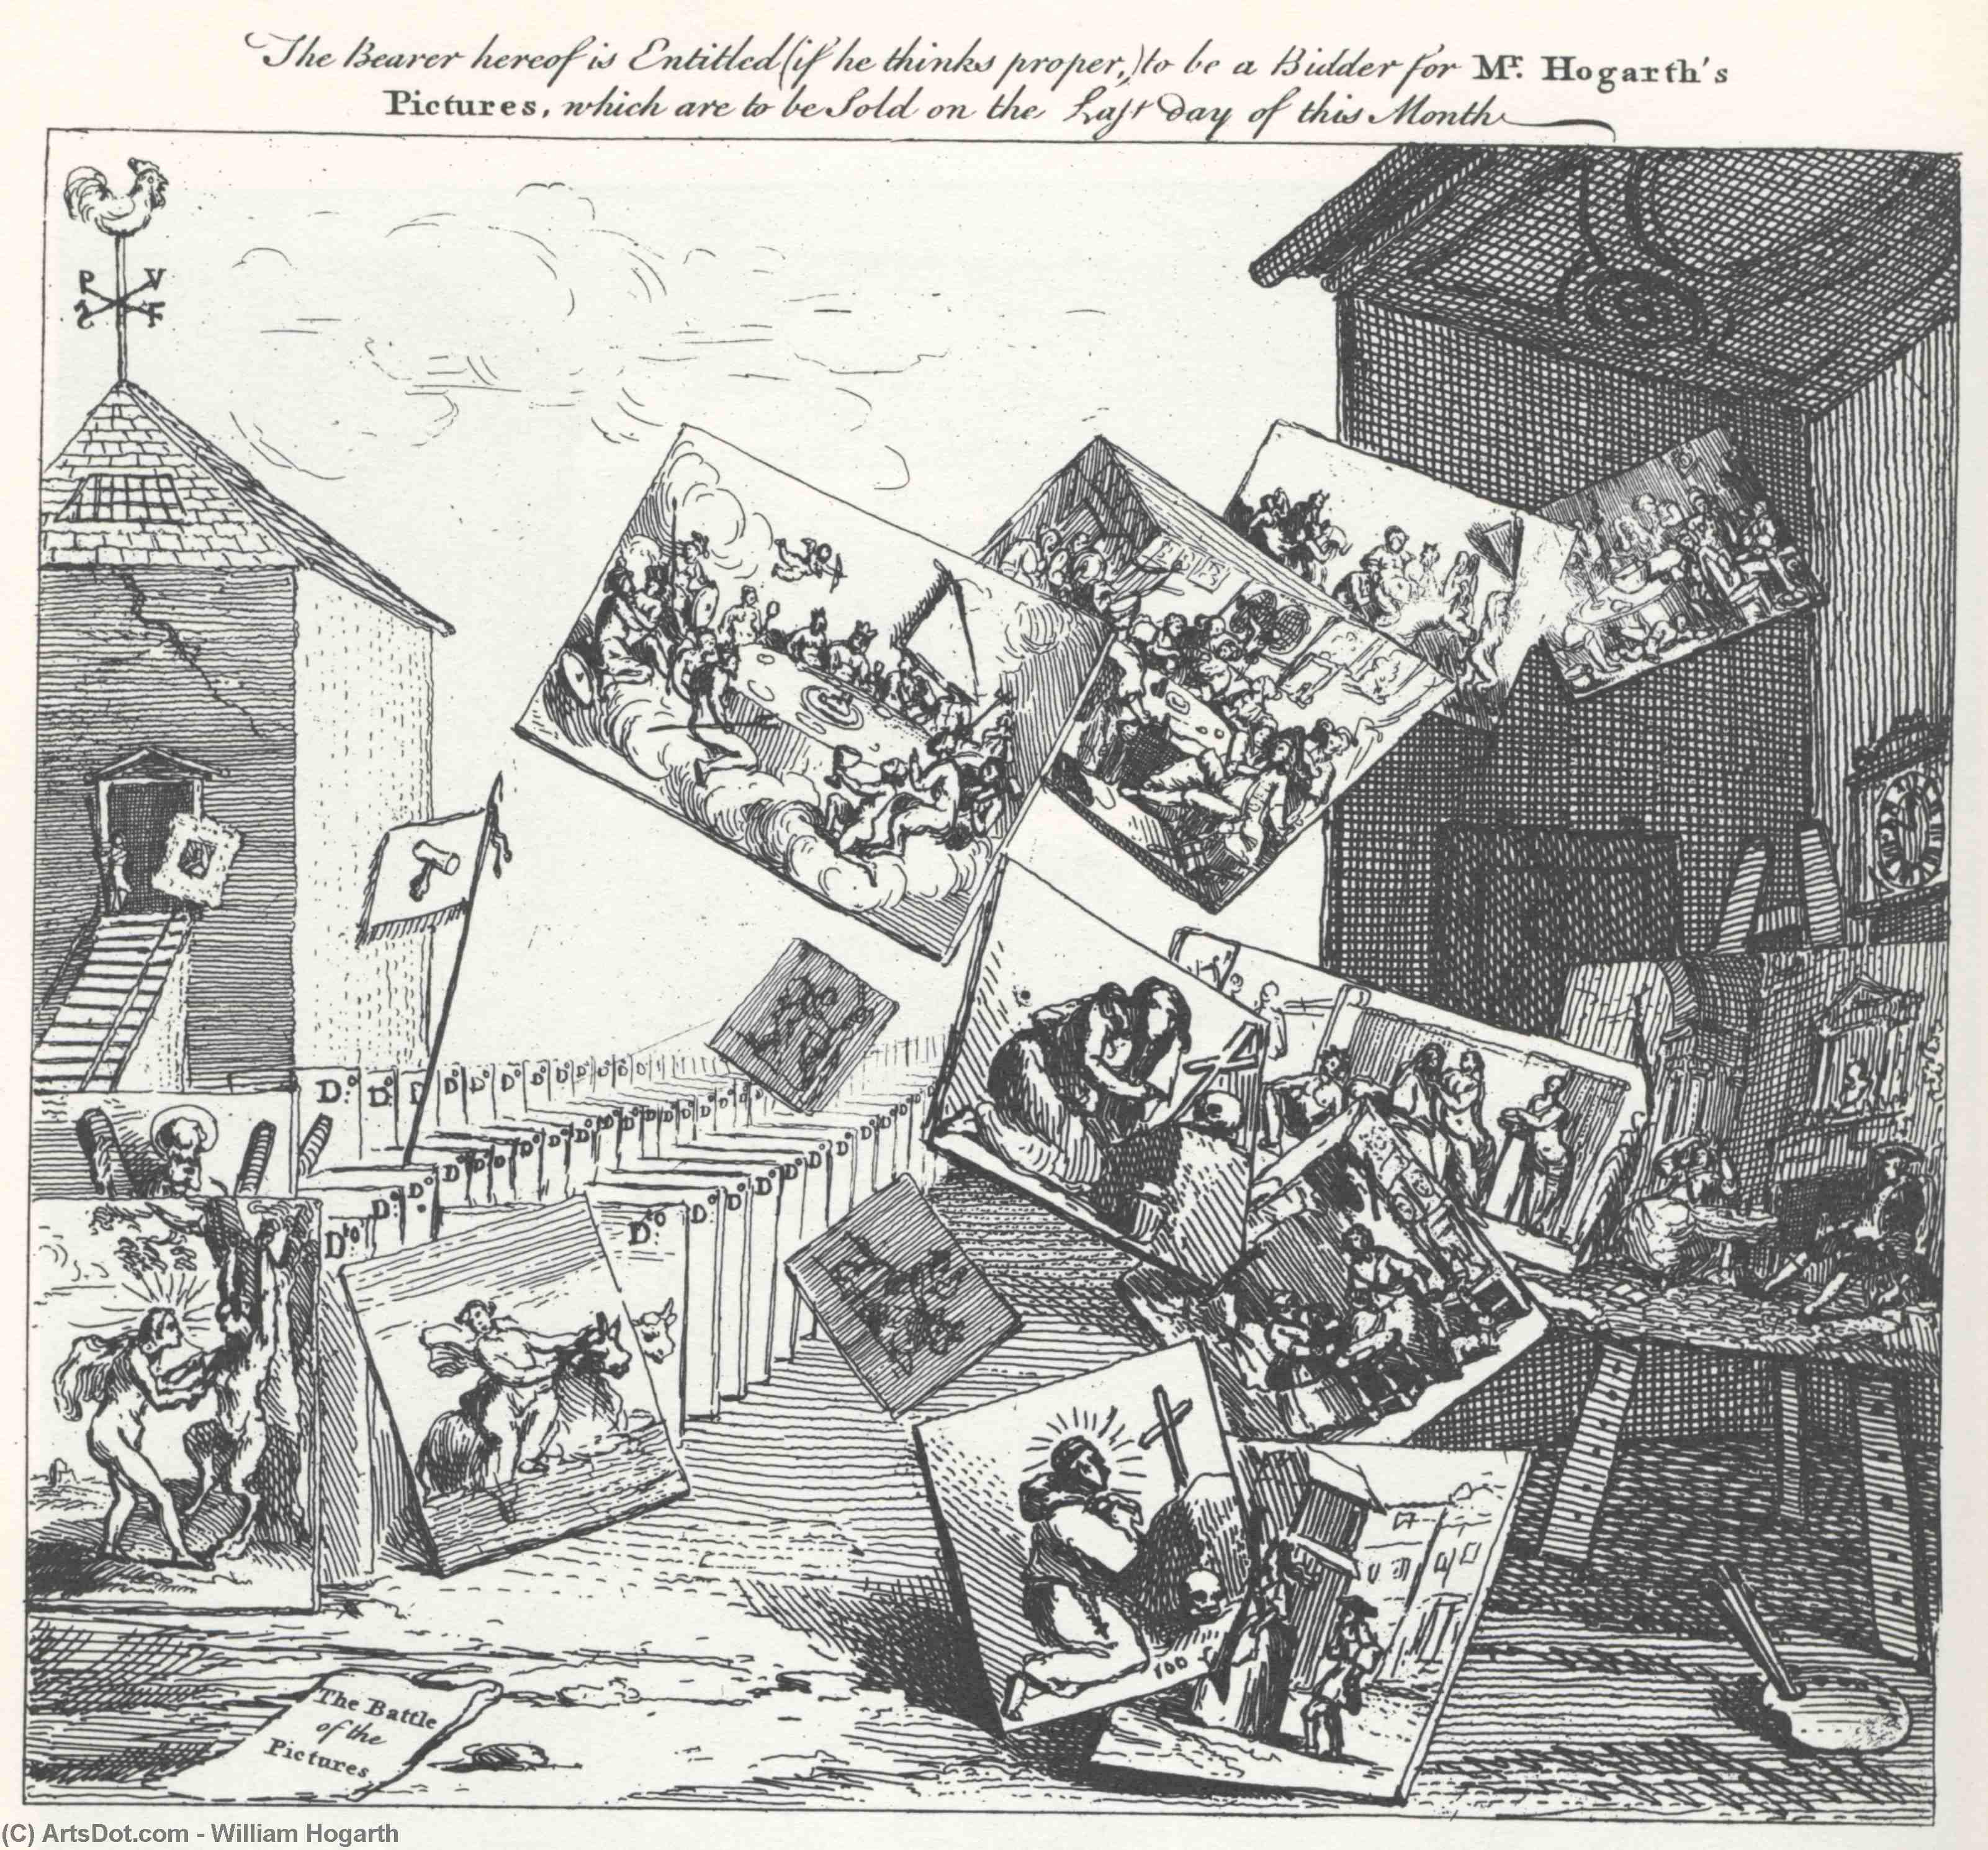 WikiOO.org - Enciklopedija likovnih umjetnosti - Slikarstvo, umjetnička djela William Hogarth - The Battle of the Pictures